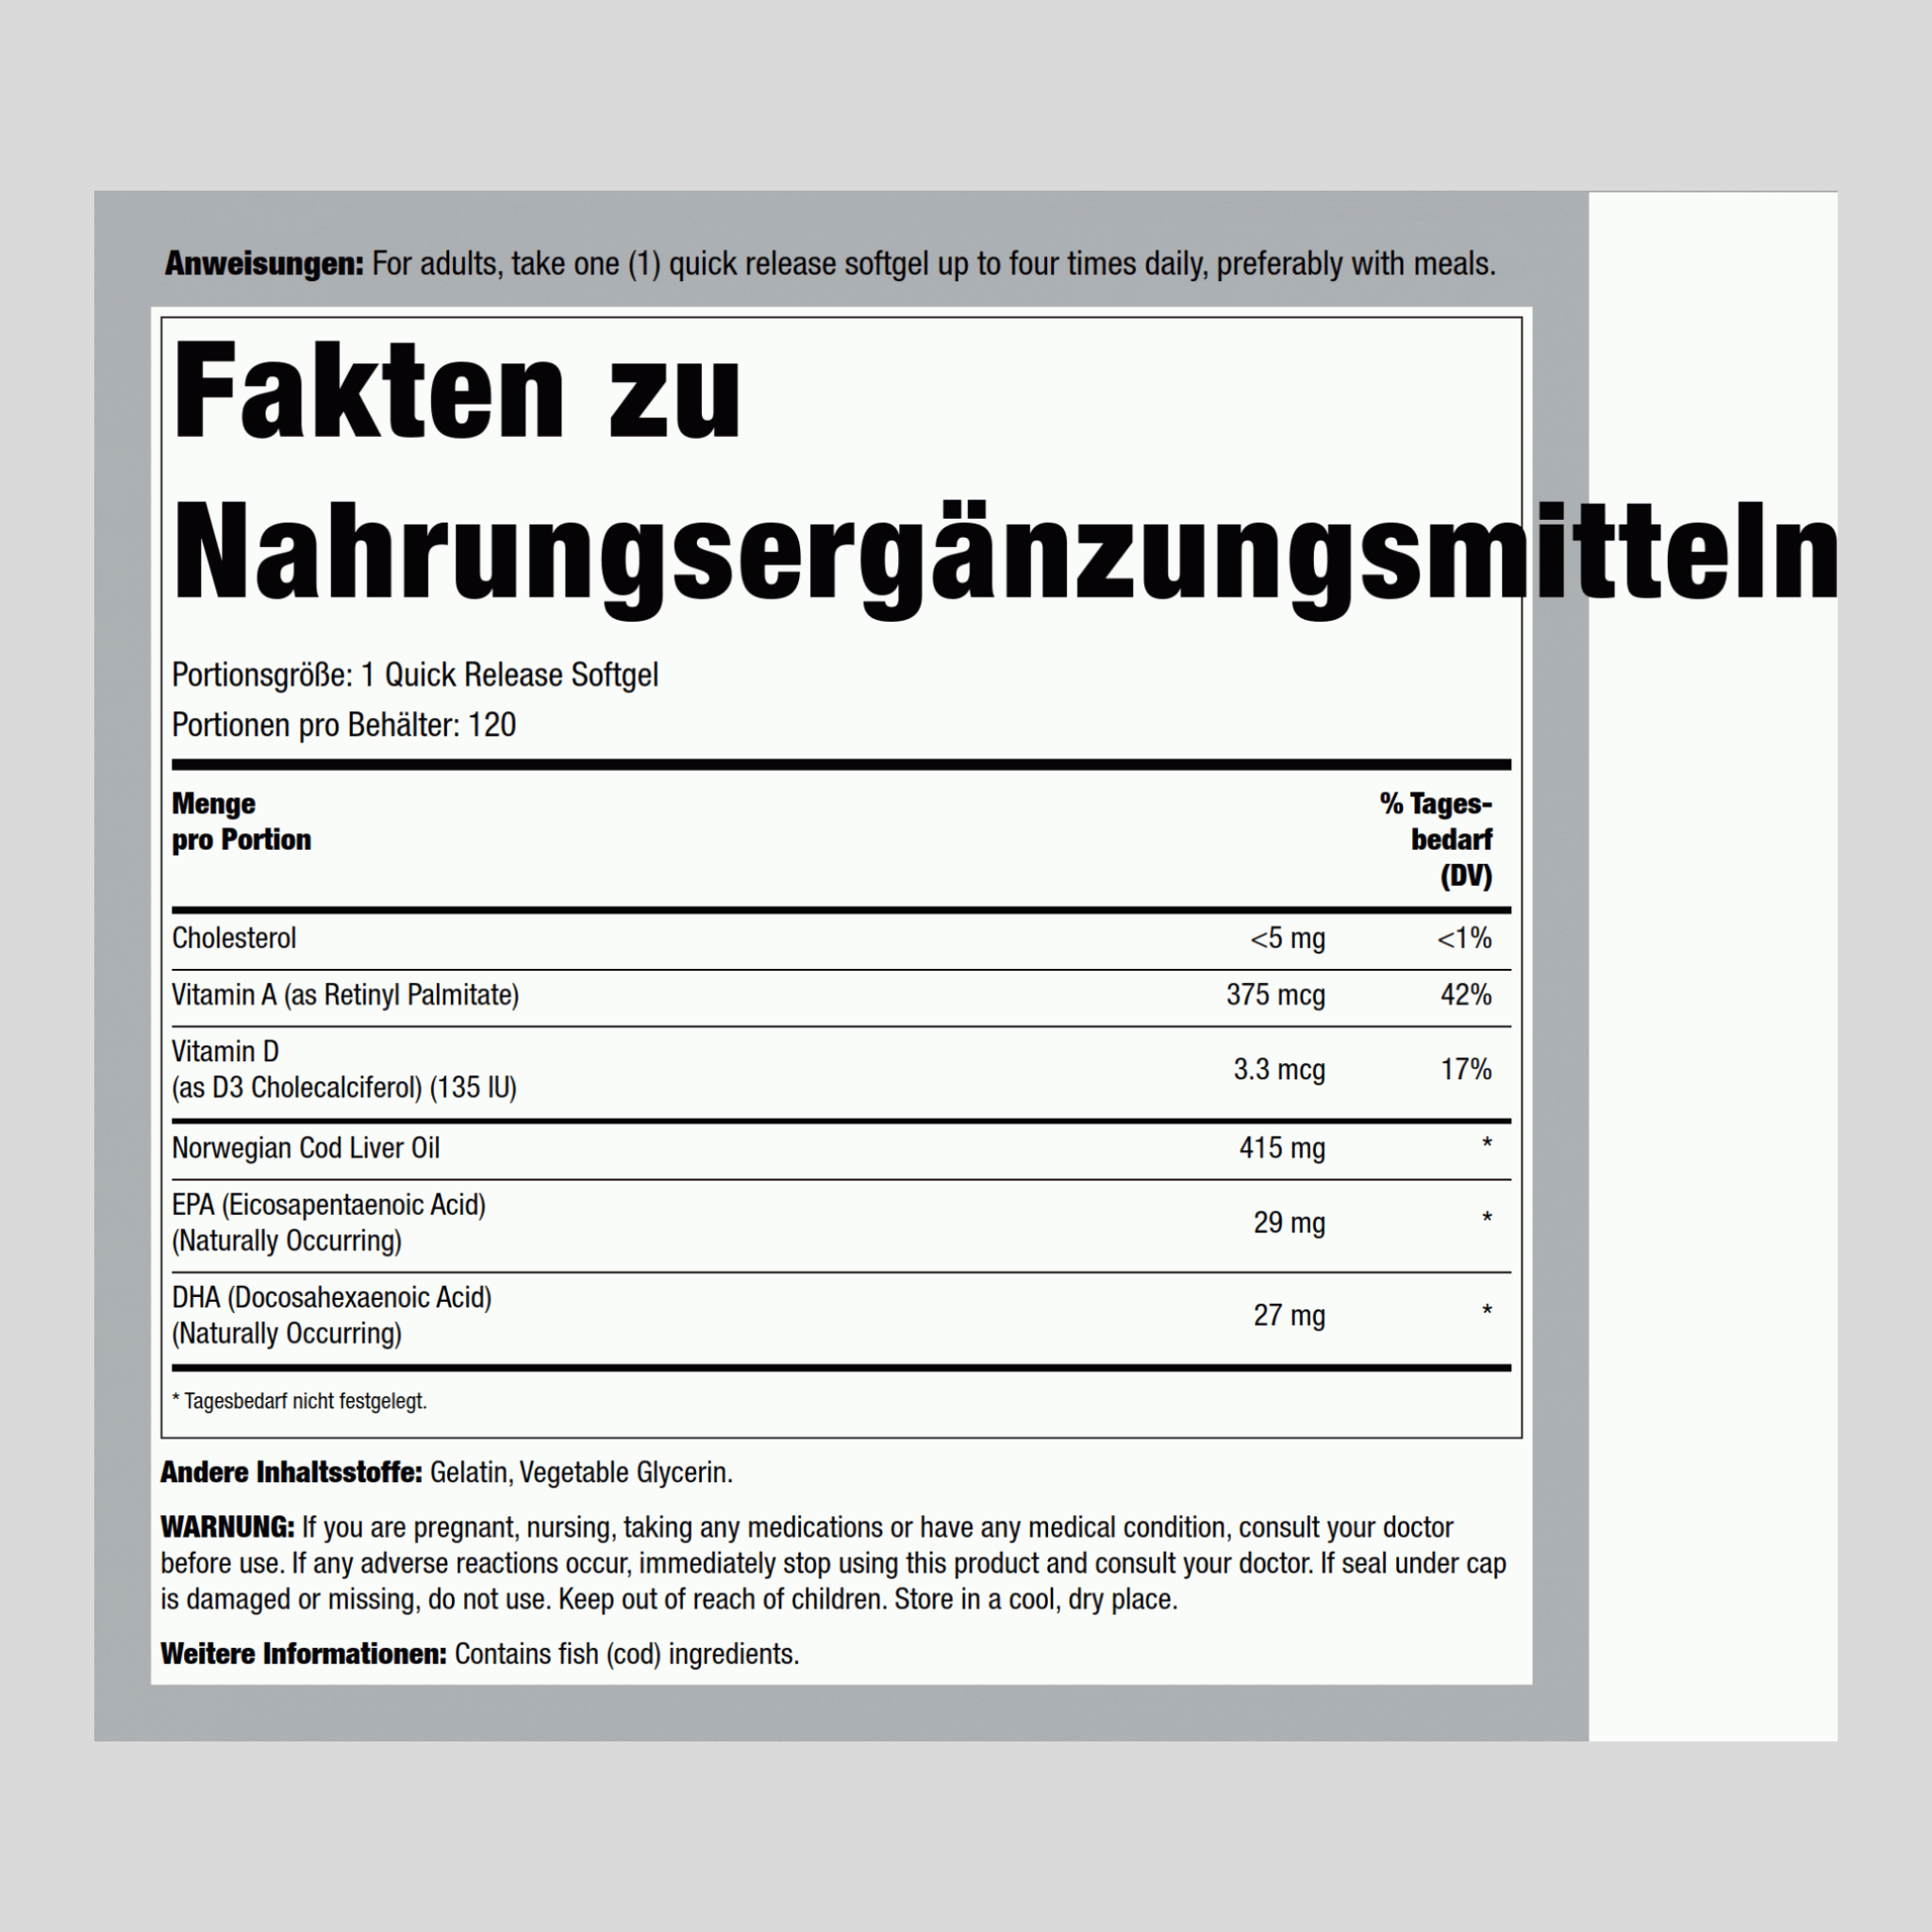 Lebertran  (Norwegian) 415 mg 120 Softgele mit schneller Freisetzung     